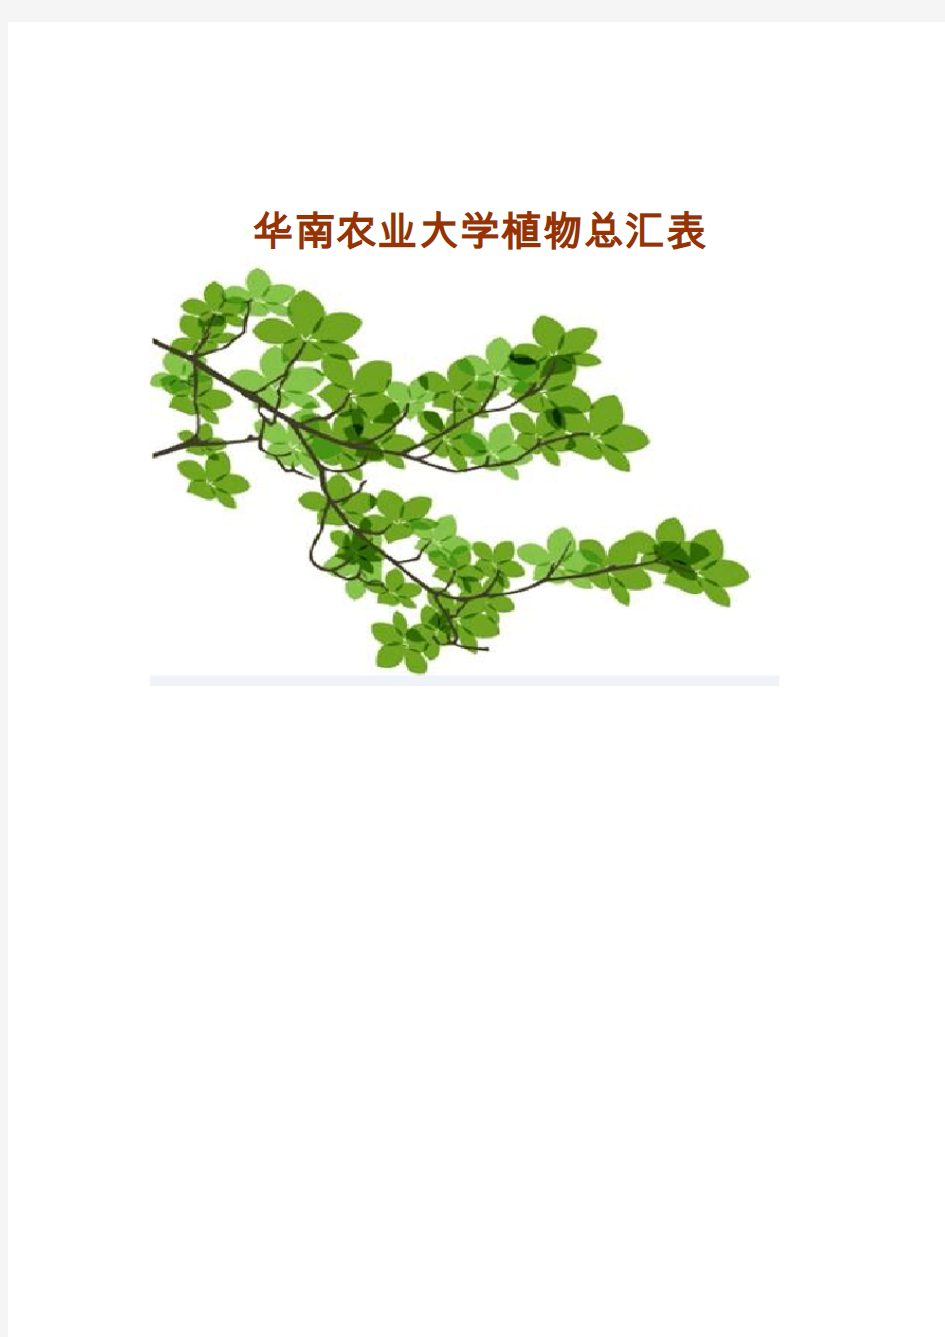 华南农业大学植物总汇表